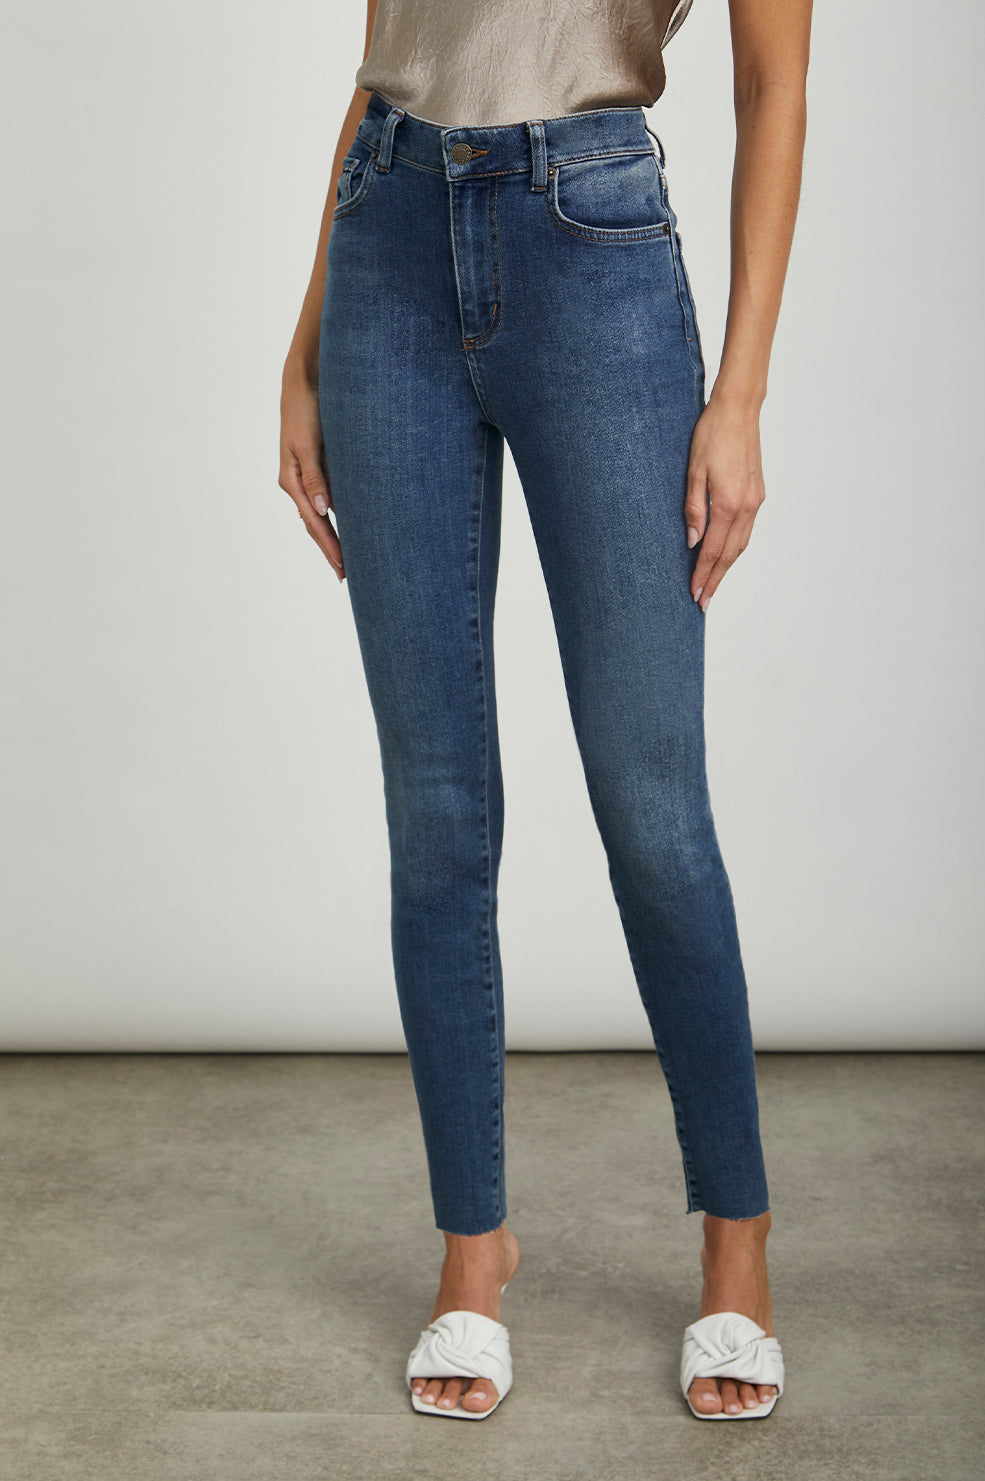 Skinny Denim Jeans For Women 